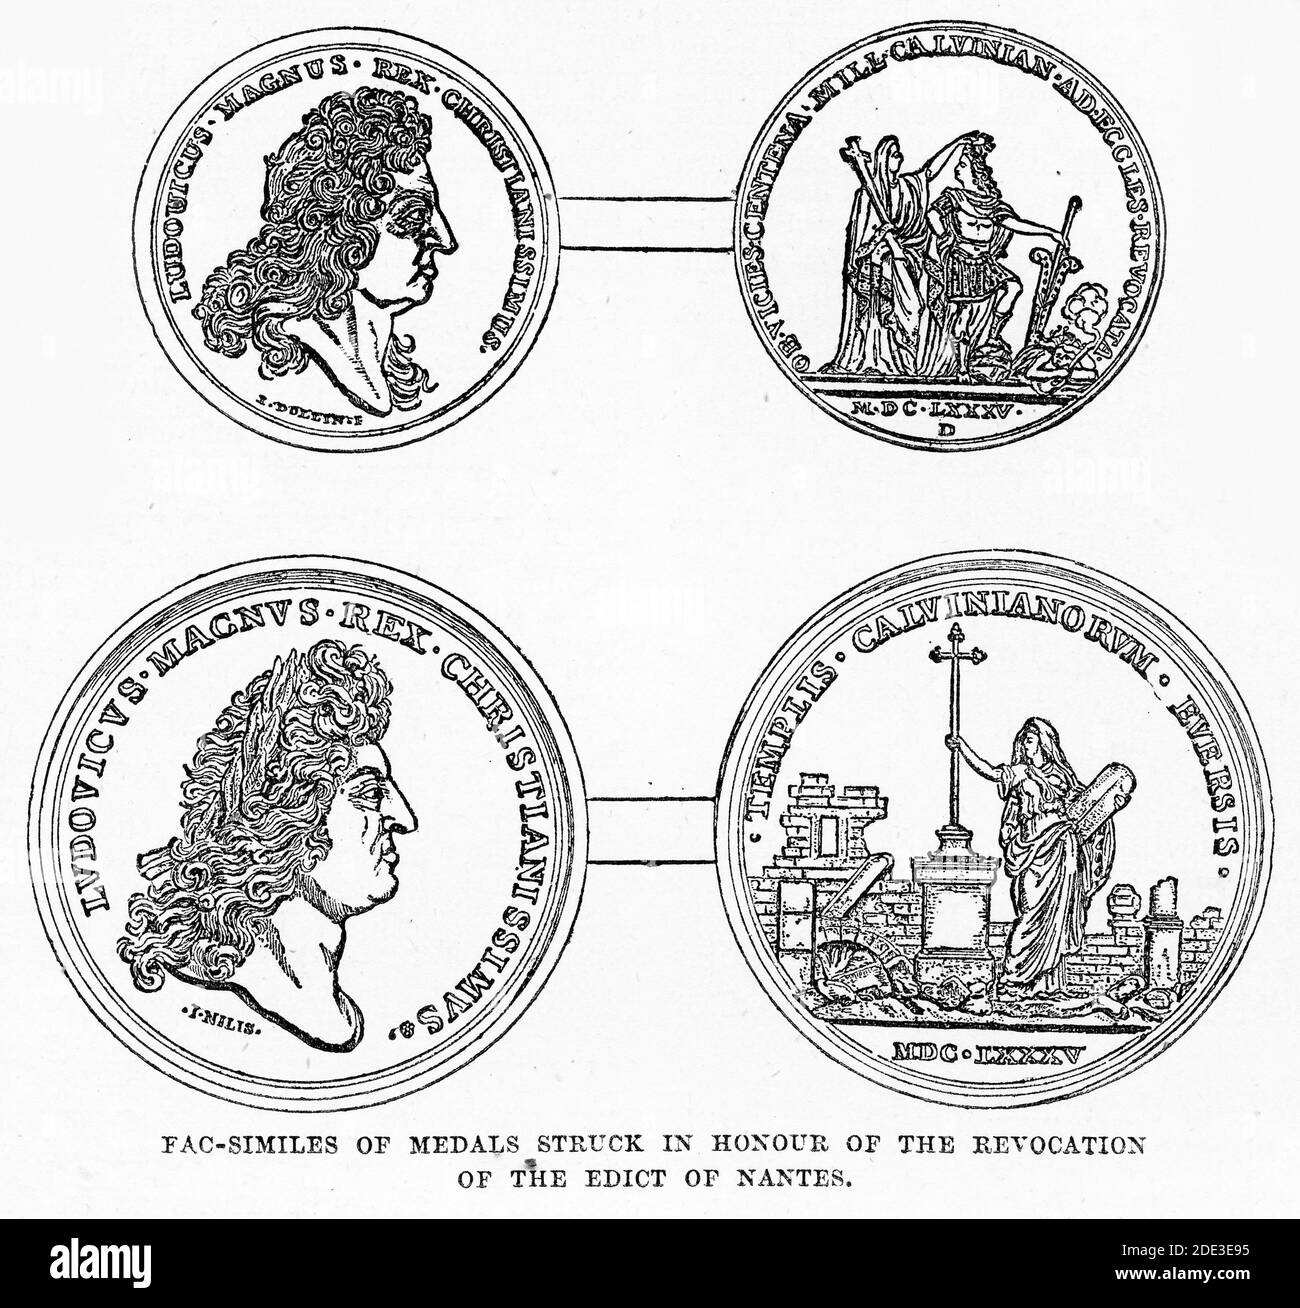 Grabado de medallas en 1685 para honrar la edición de Fontainbleau, que revocó el edicto de Nantes y abrió la puerta a la persecución de Huguenots. Ilustración de 'la historia del protestantismo' por James Aitken Wylie (1808-1890), pub. 1878 Foto de stock